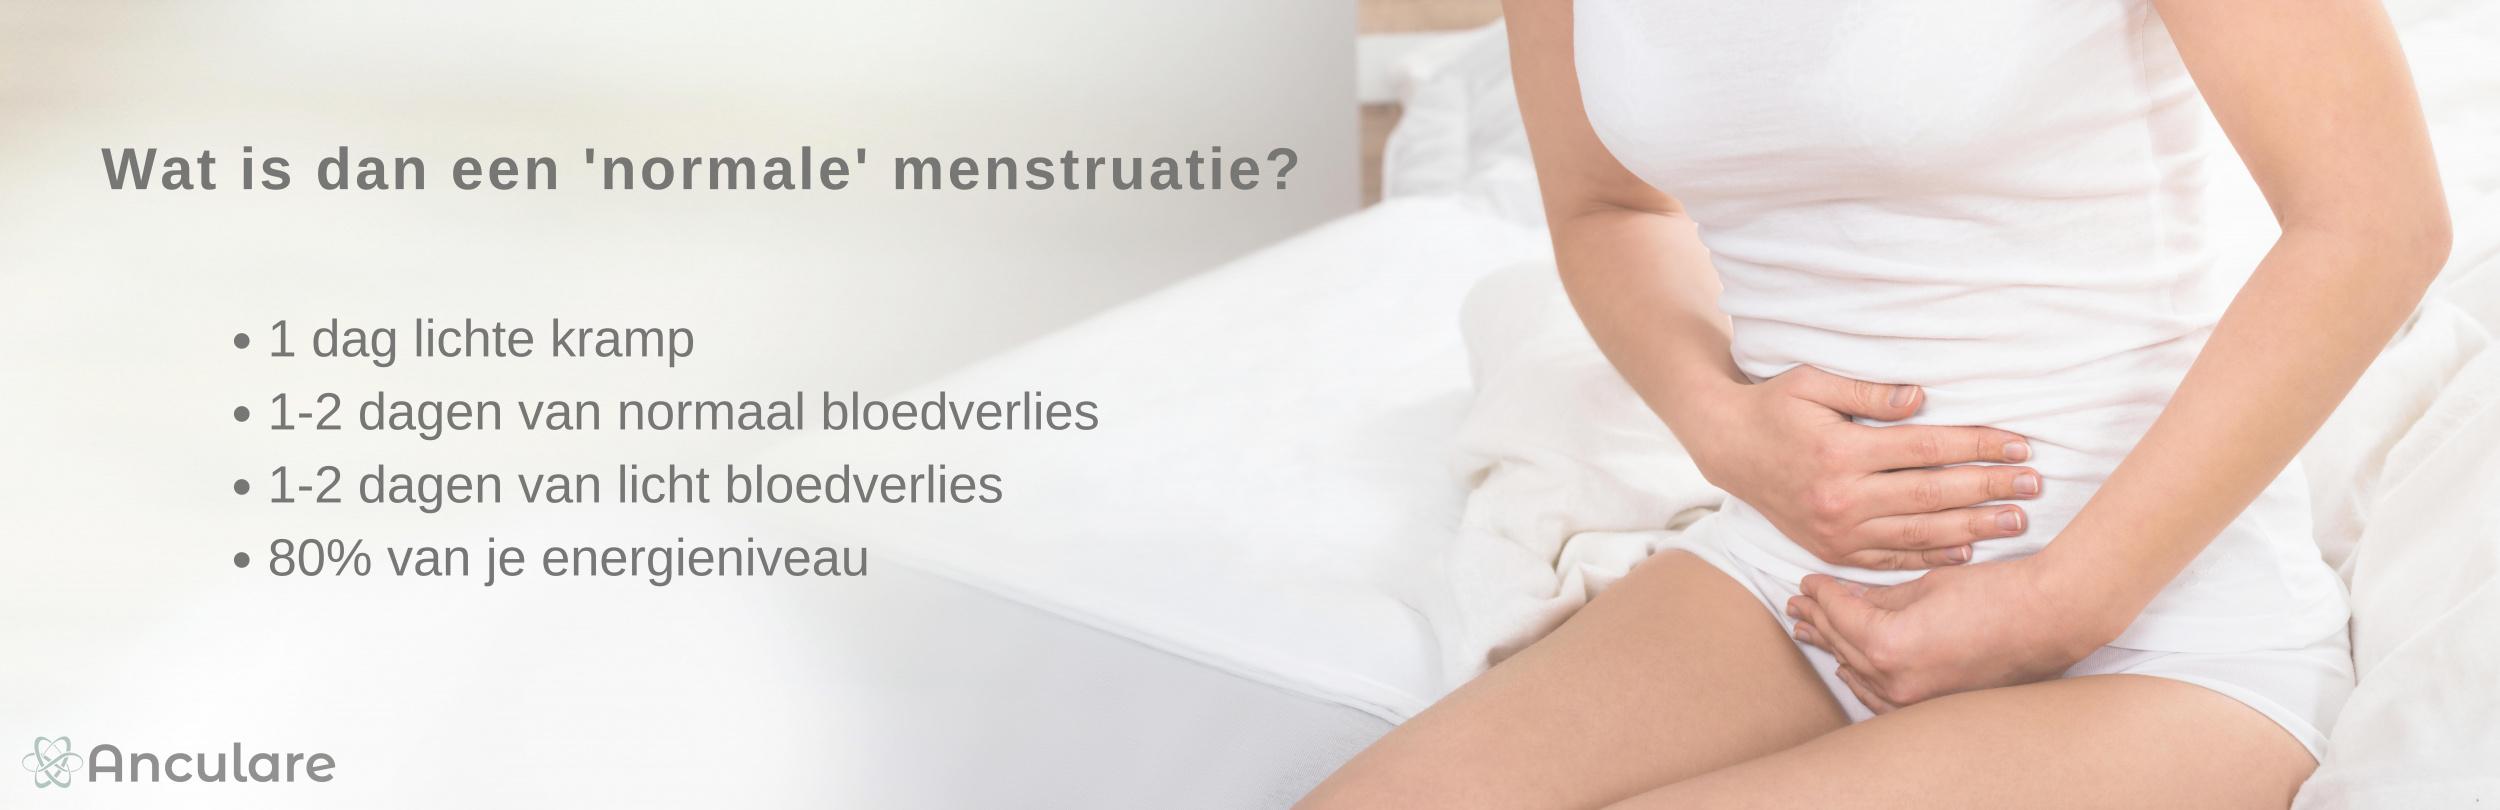 Normale menstruatie-Mat.jpg